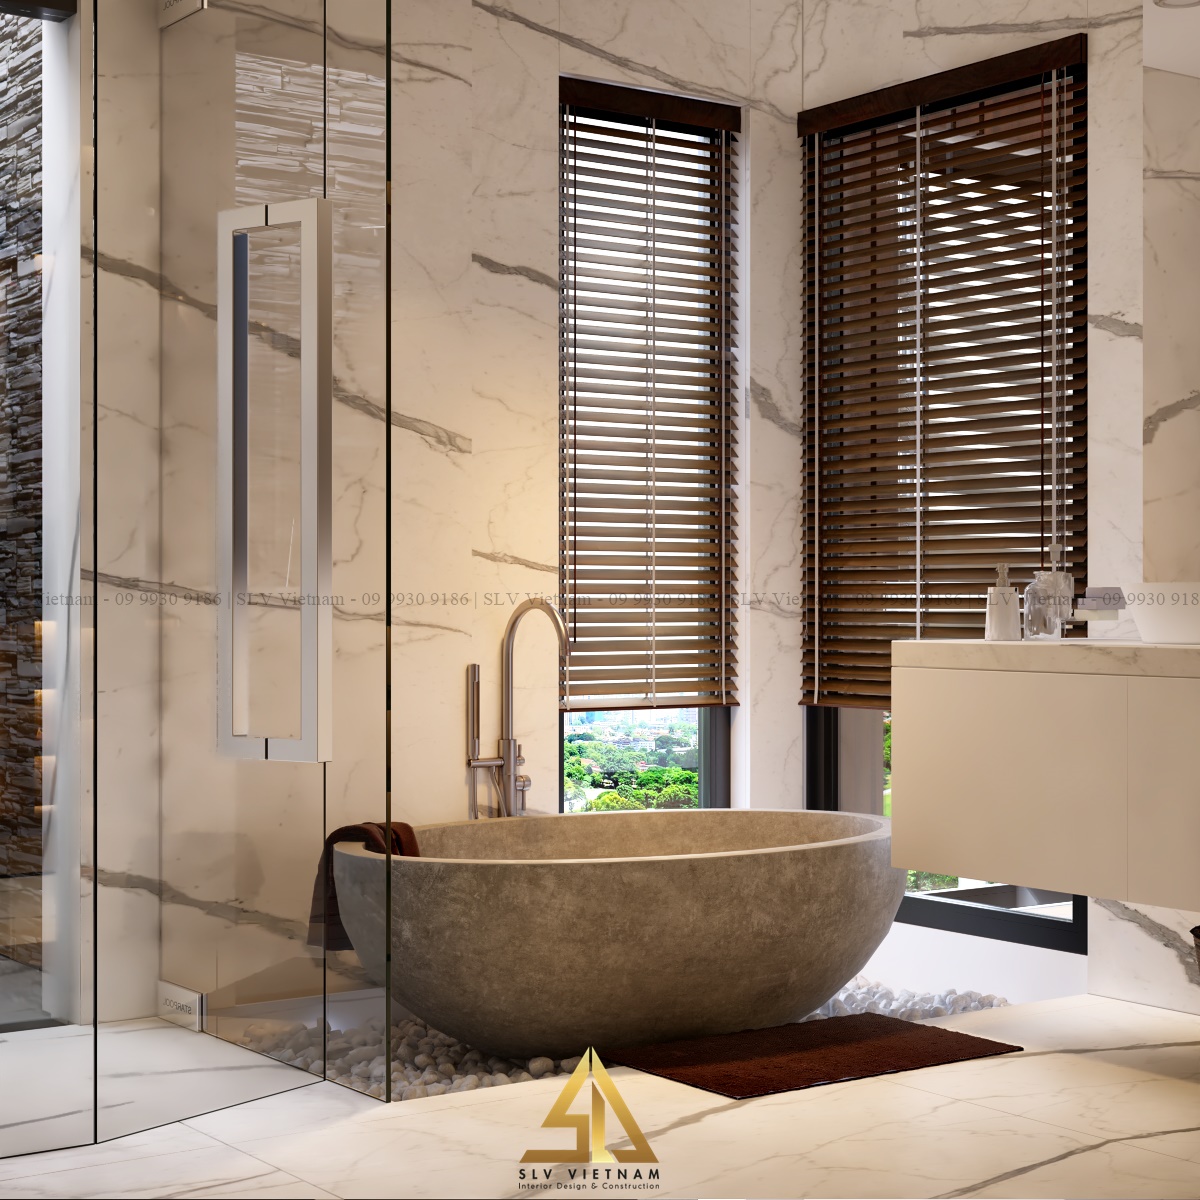 Phòng tắm được thiết kế hiện đại kết hợp với phong cách Nhật Bản (Dự án của SLV Vietnam)